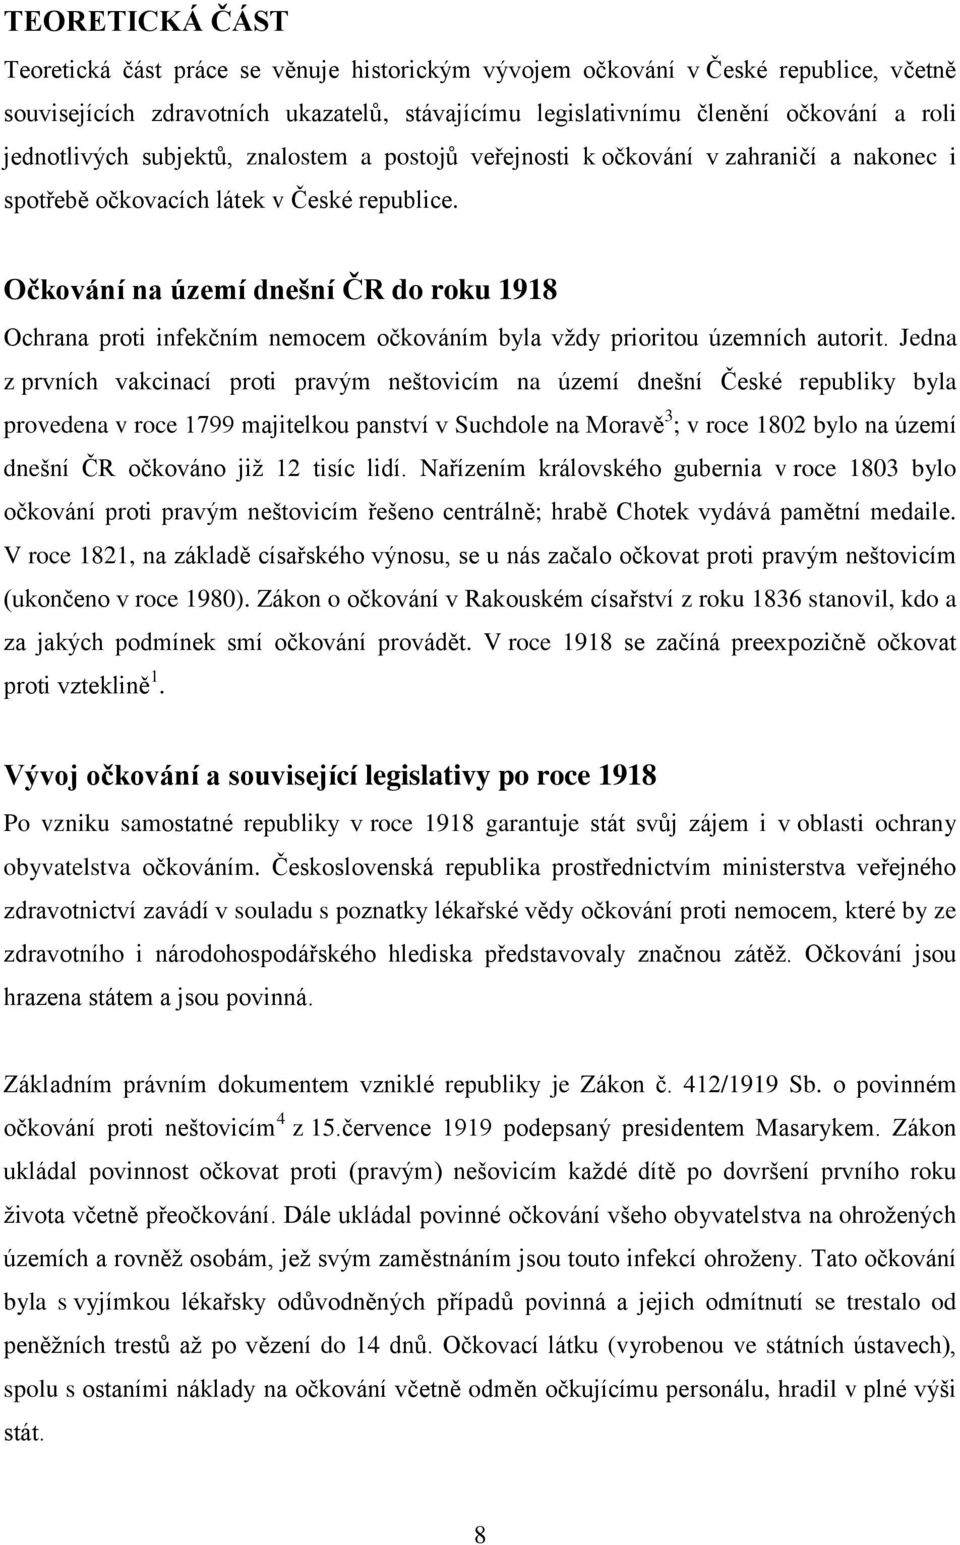 Očkování na území dnešní ČR do roku 1918 Ochrana proti infekčním nemocem očkováním byla vždy prioritou územních autorit.